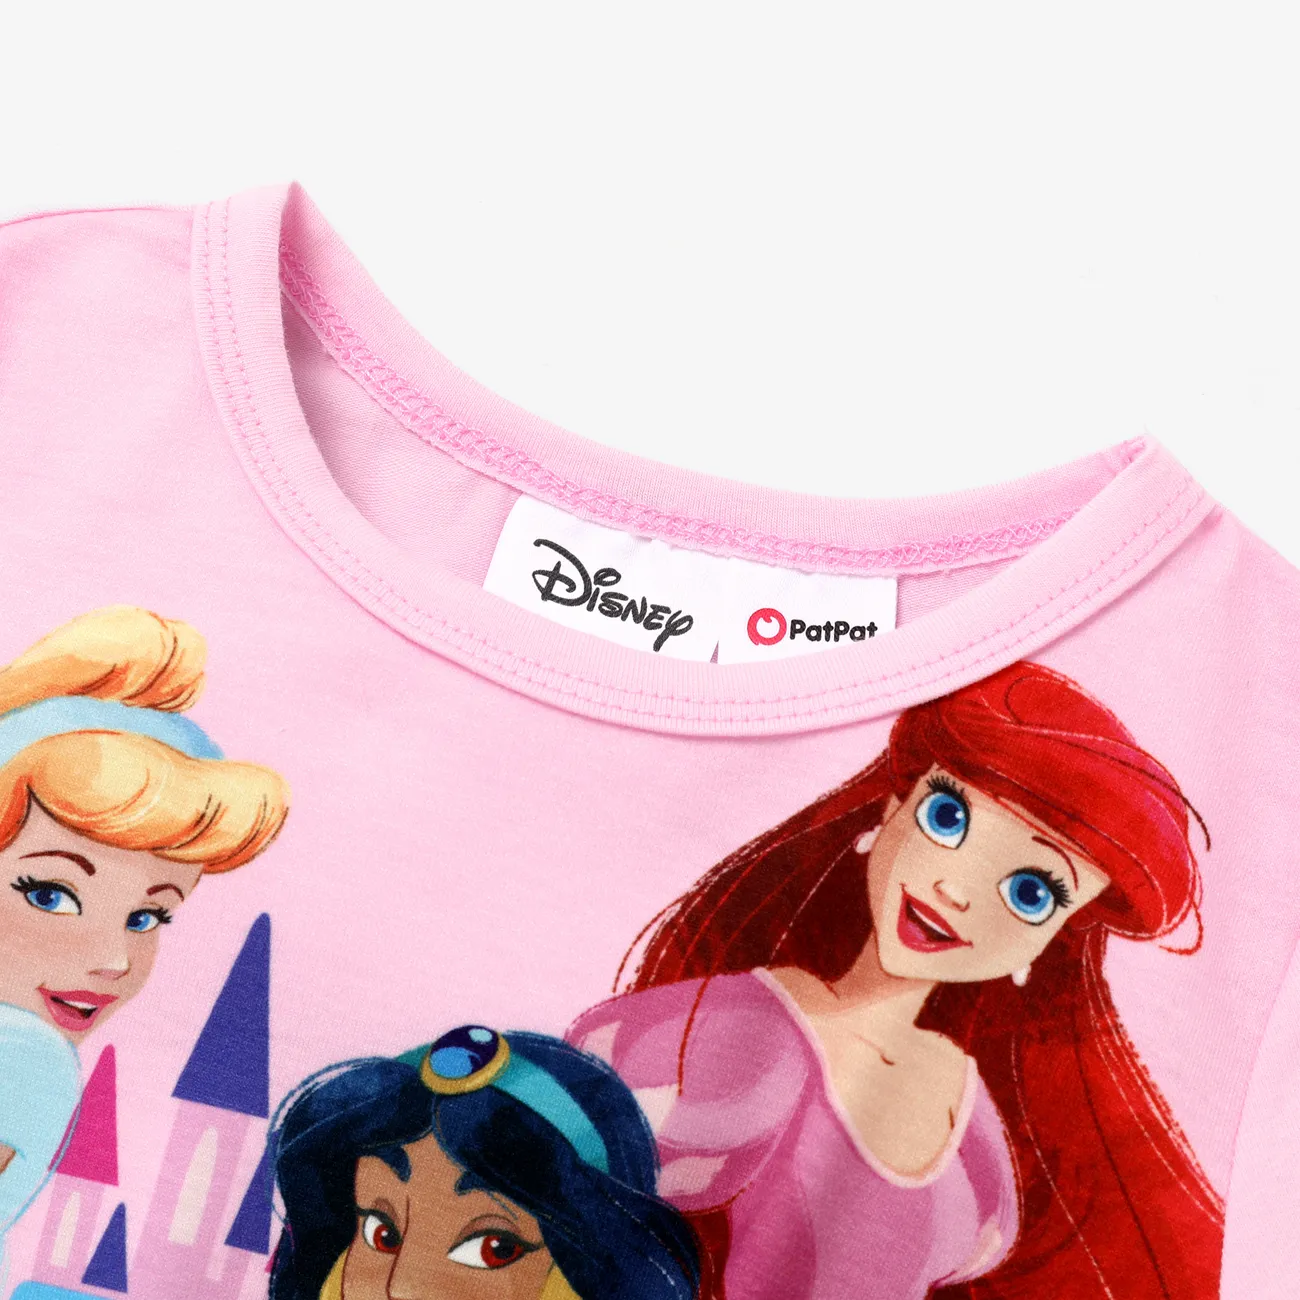 Disney princess Toddler Girls Childlike Tee Pink big image 1